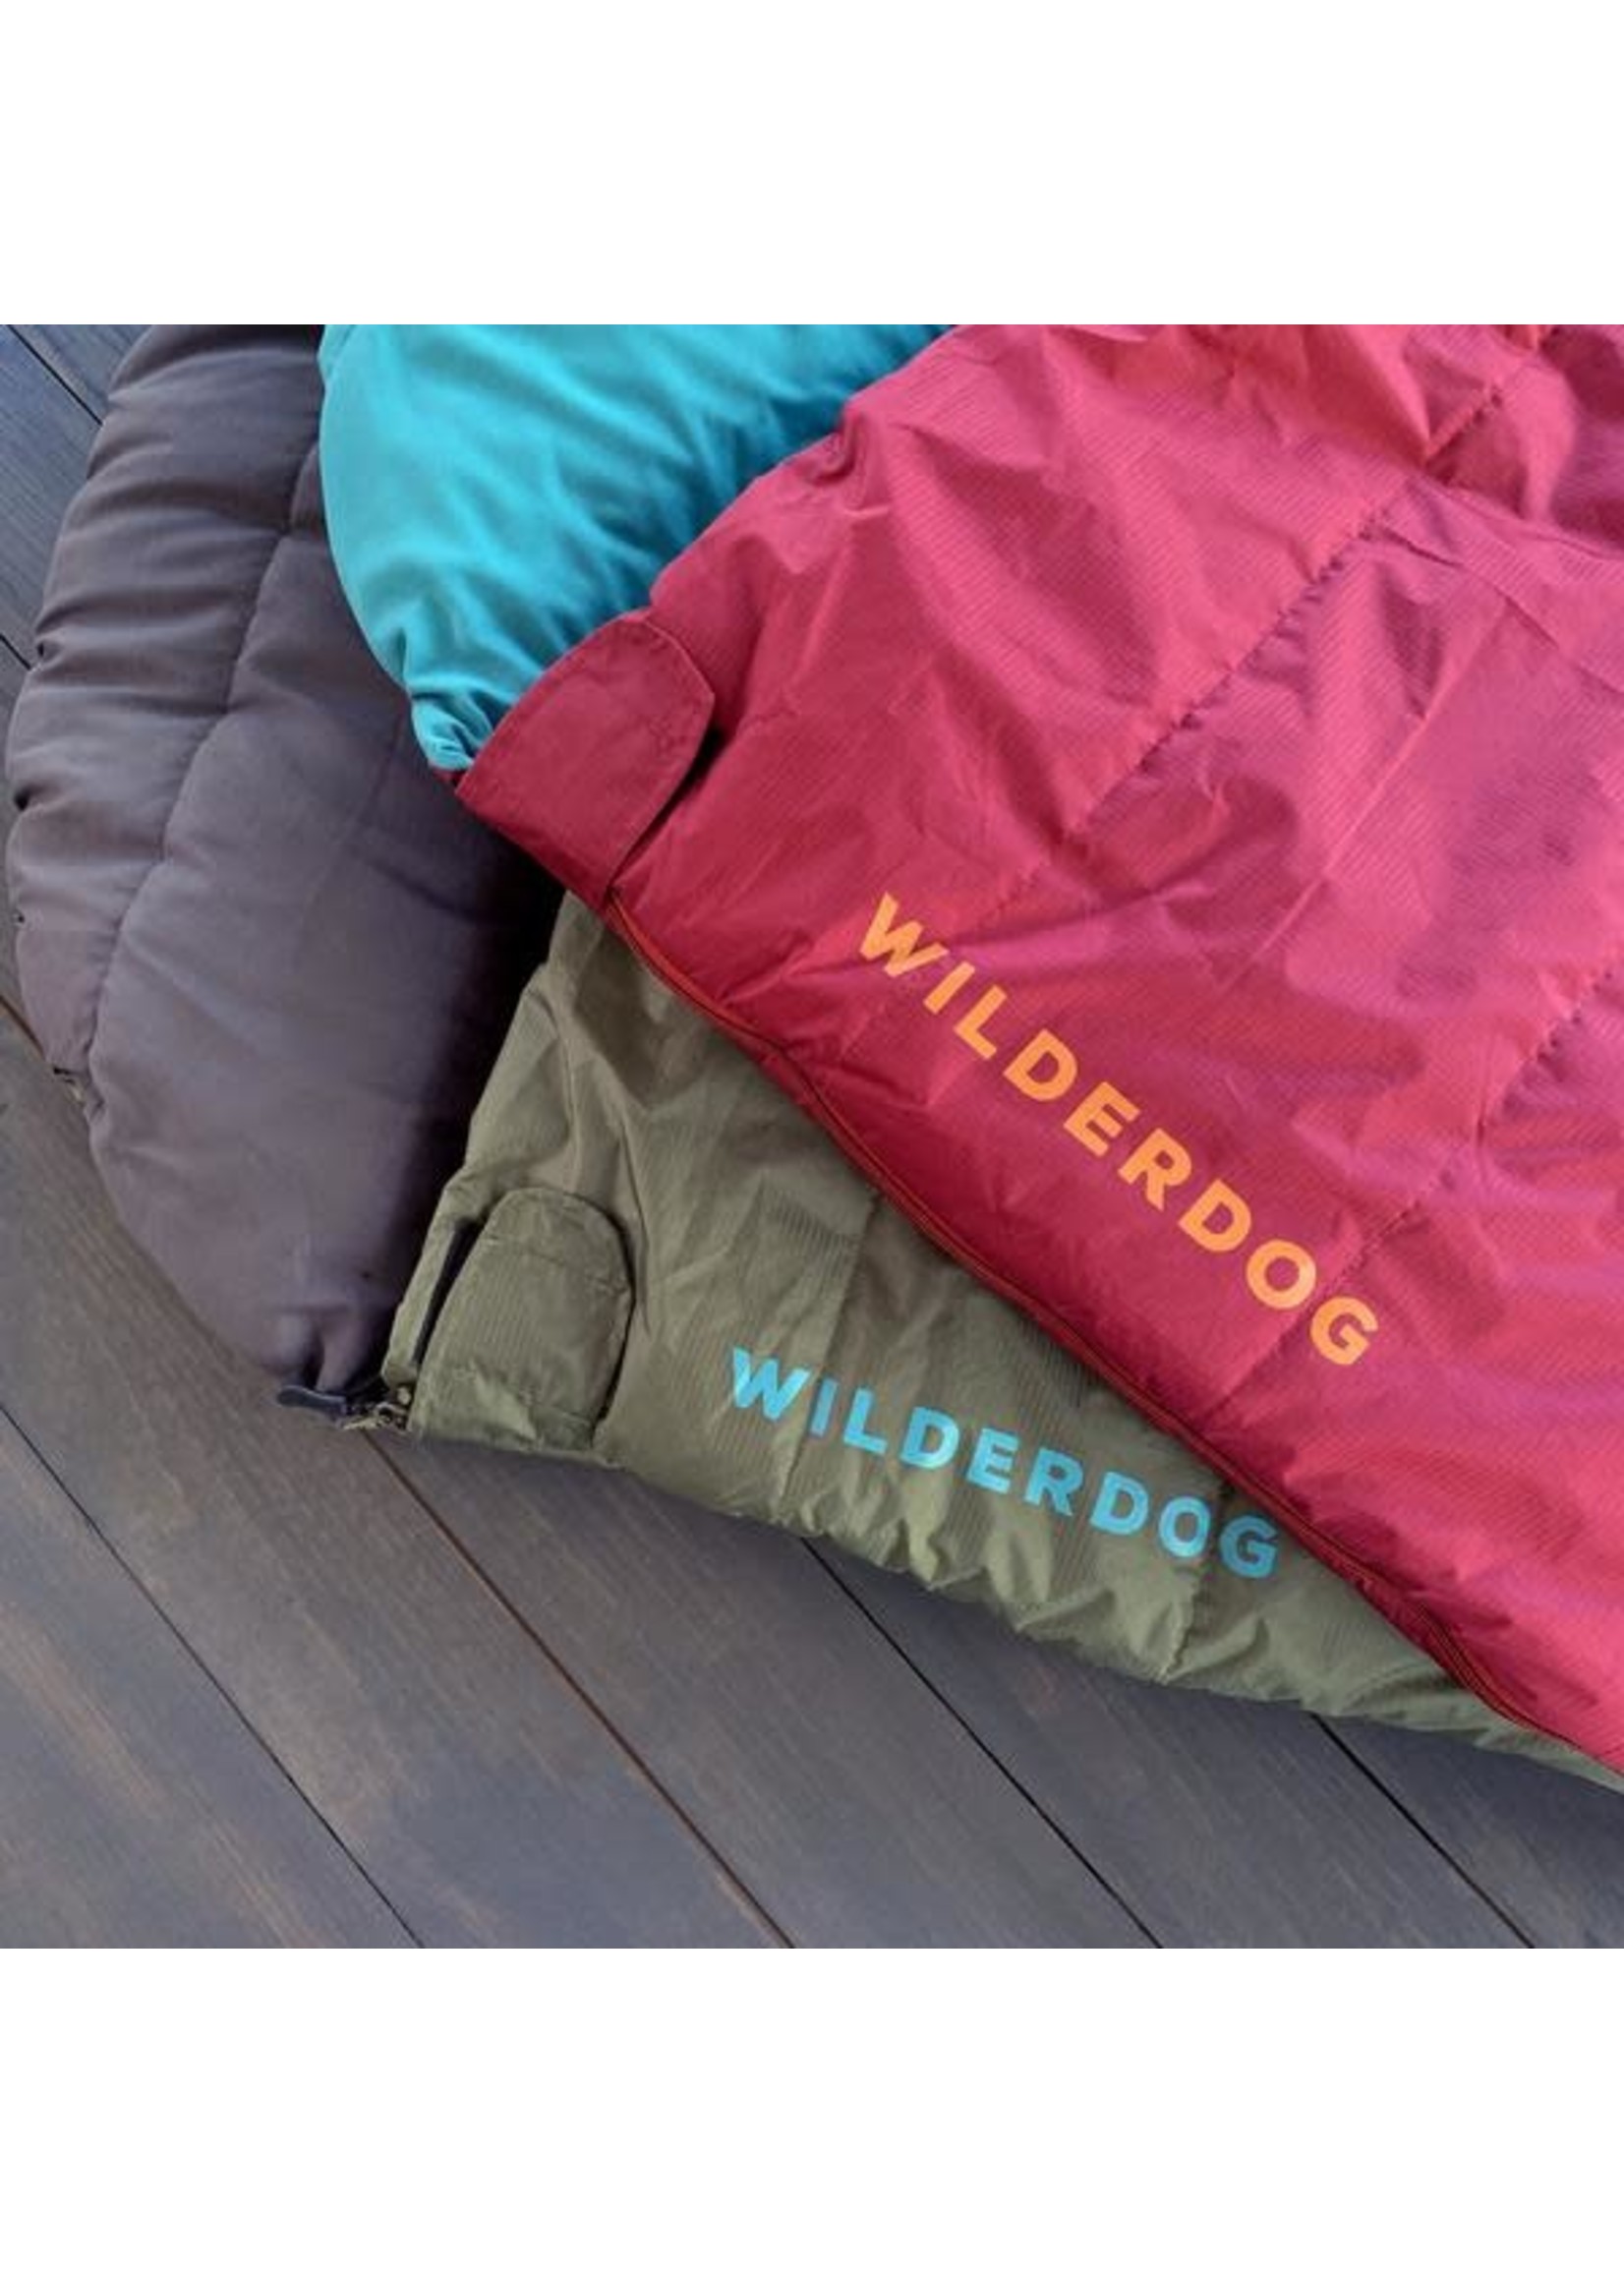 Wilderdog Sleeping Bag